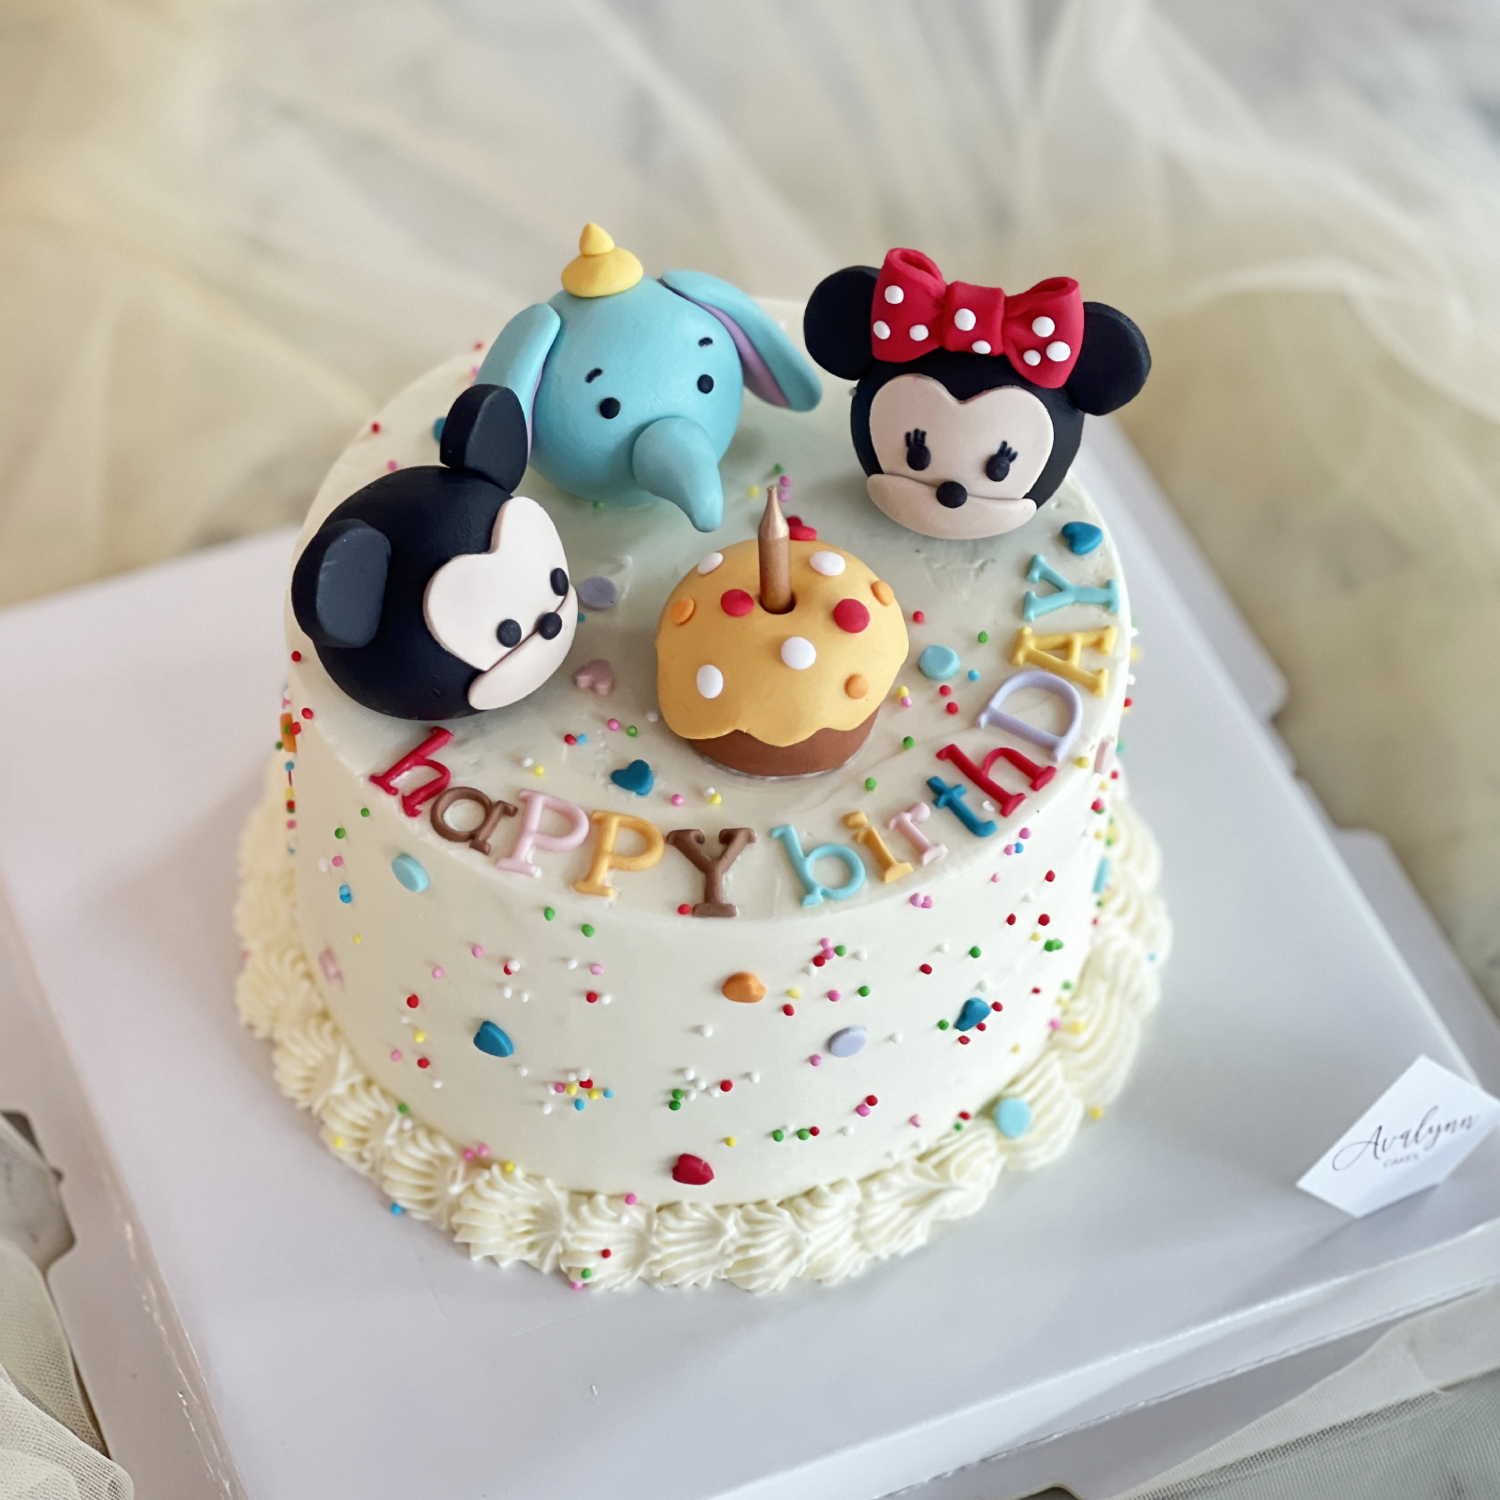 Tsum Tsum Cake Sugared Cookies & Sweets Inc | Tsum tsum birthday cake,  Disney cakes, Tsum tsum cake